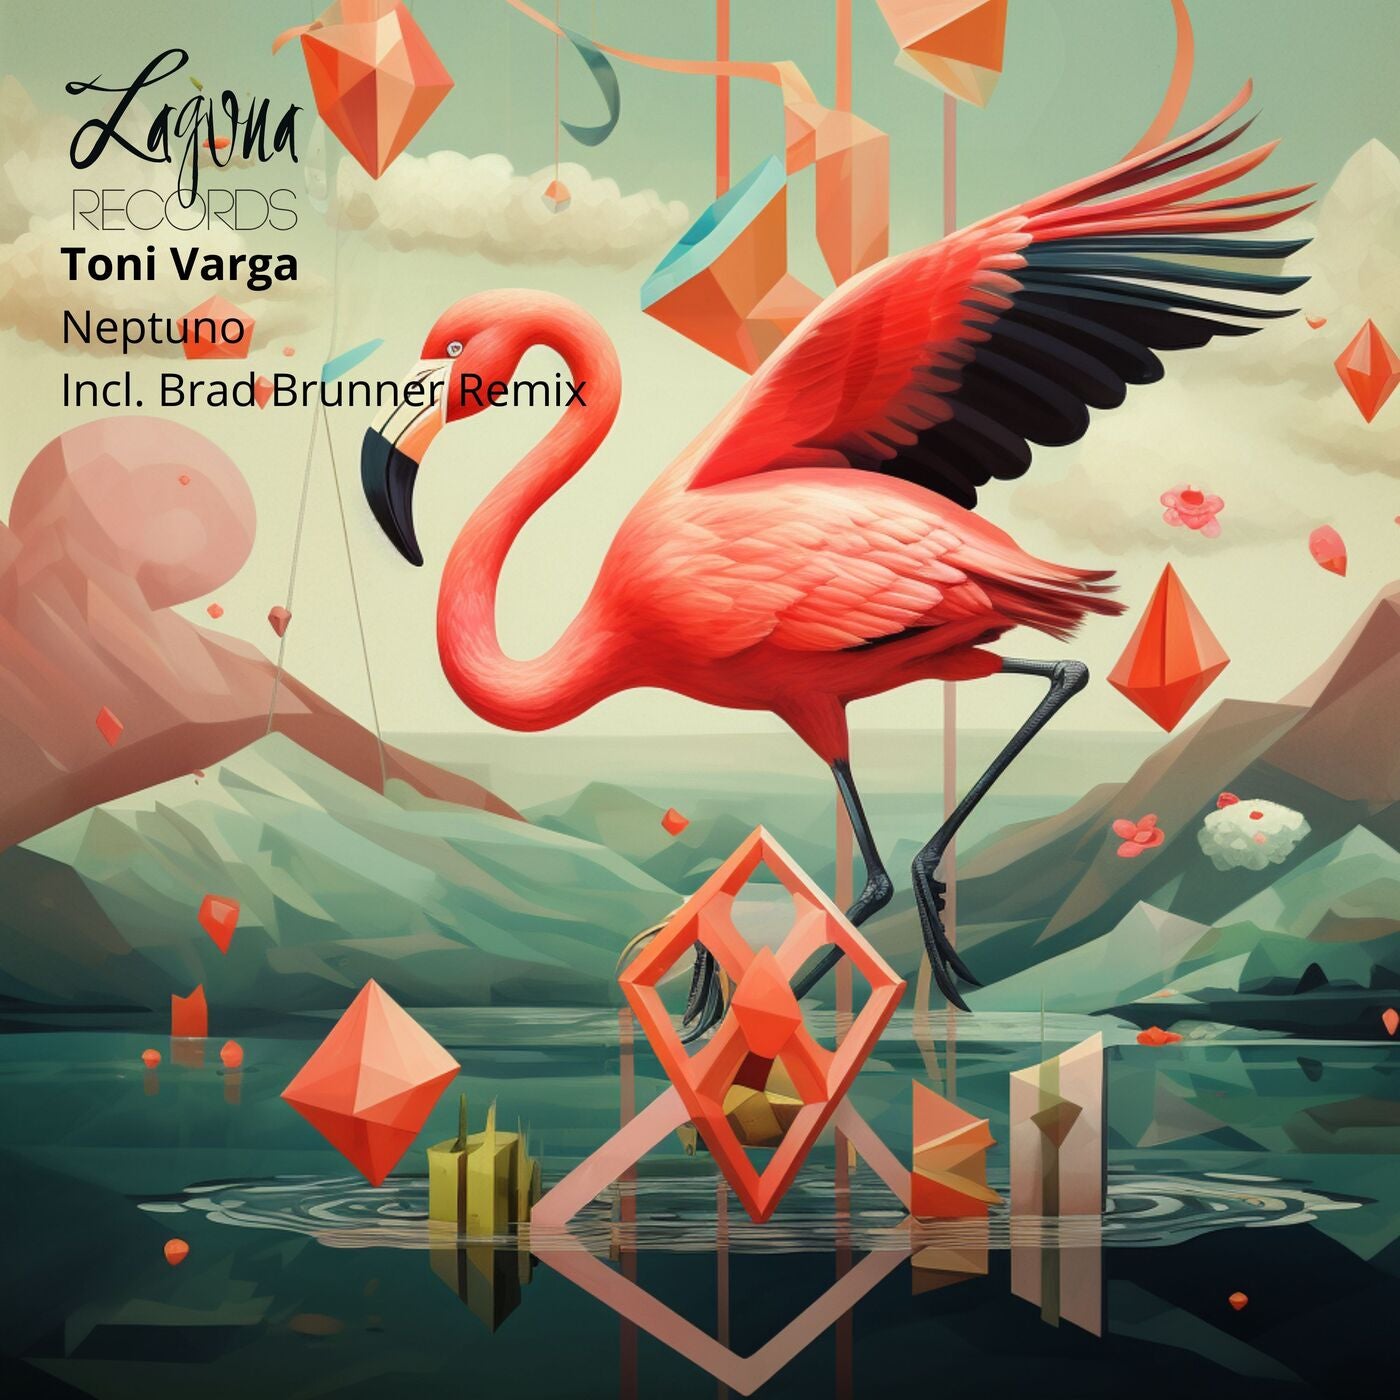 Cover - Toni Varga - Ehtereo (Original Mix)